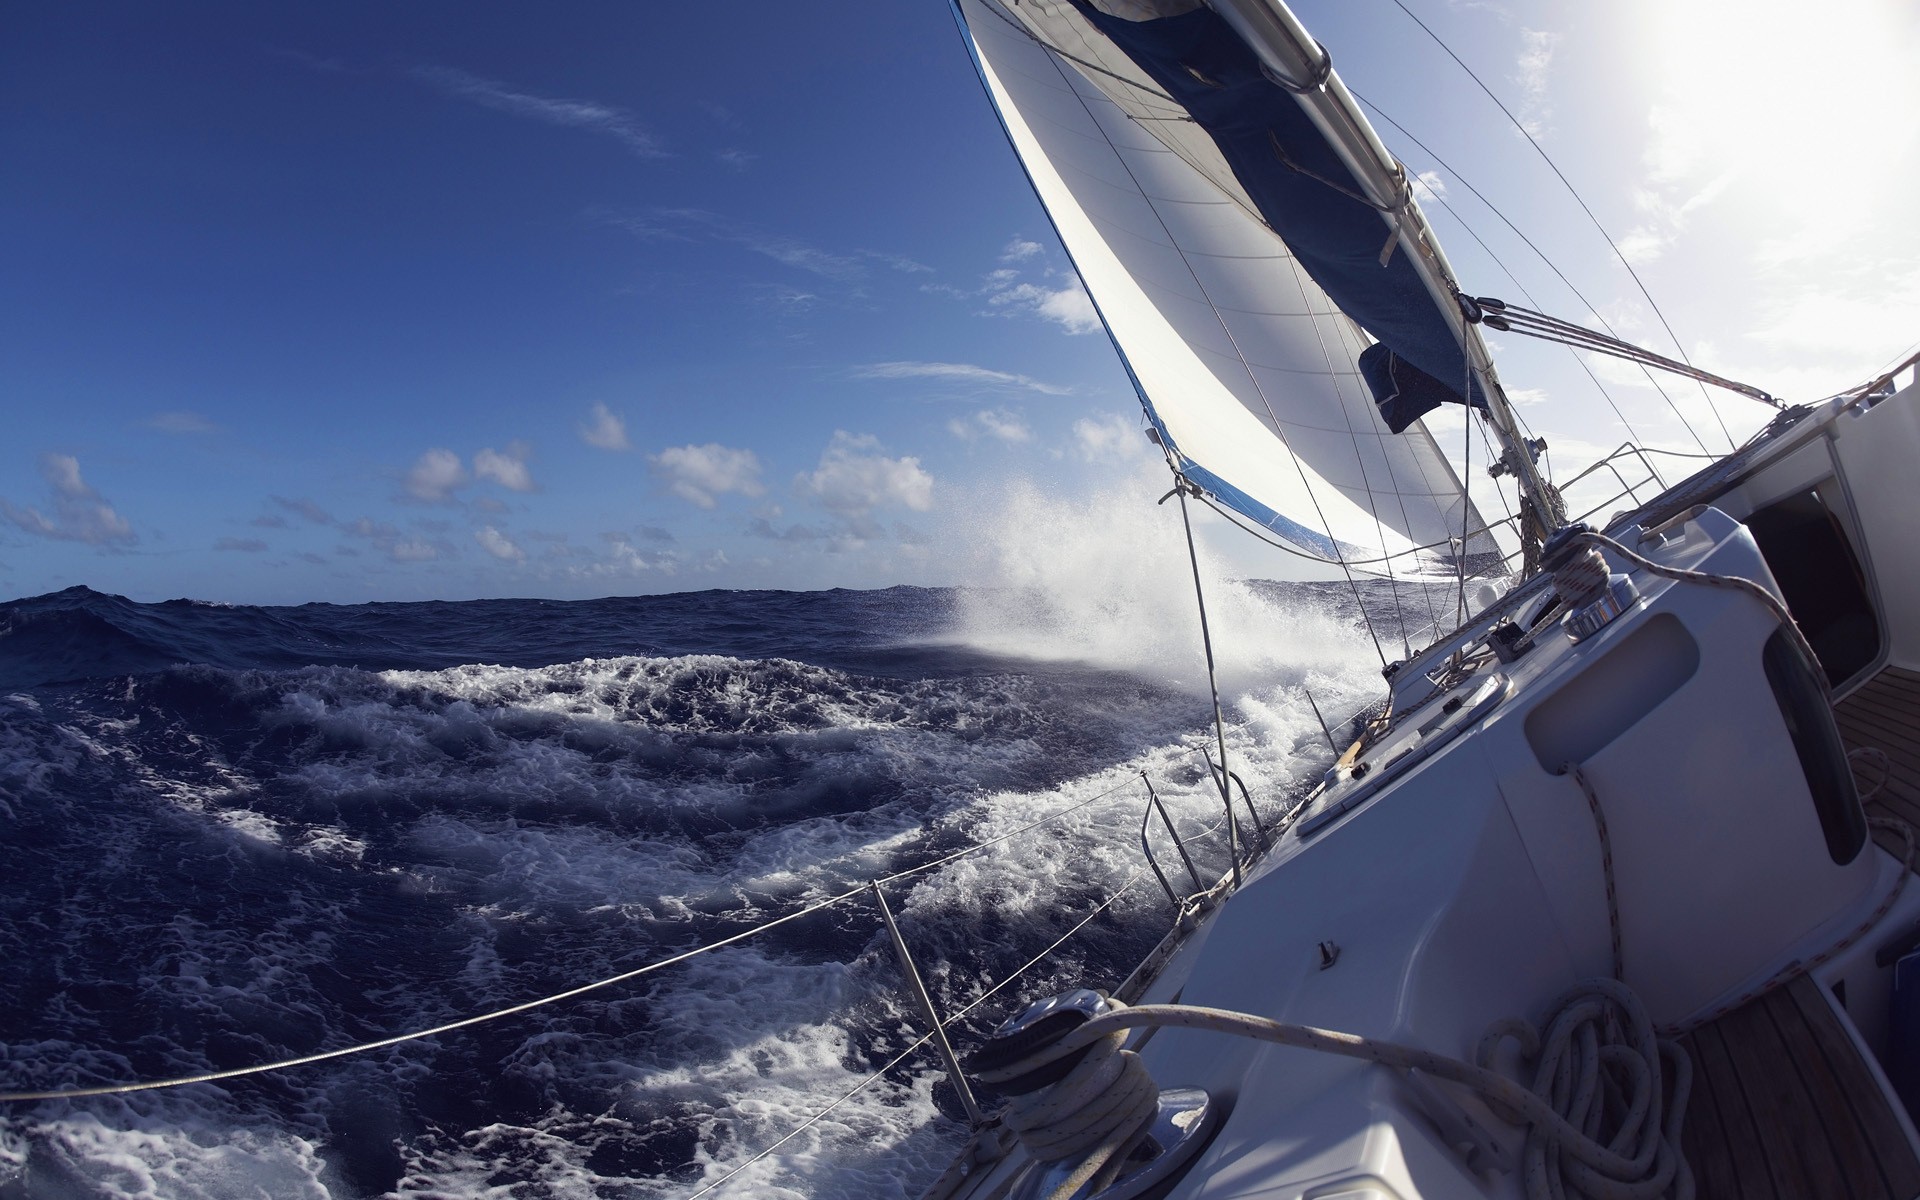 mast wallpaper download,sailing,water transportation,sail,sailing,boat